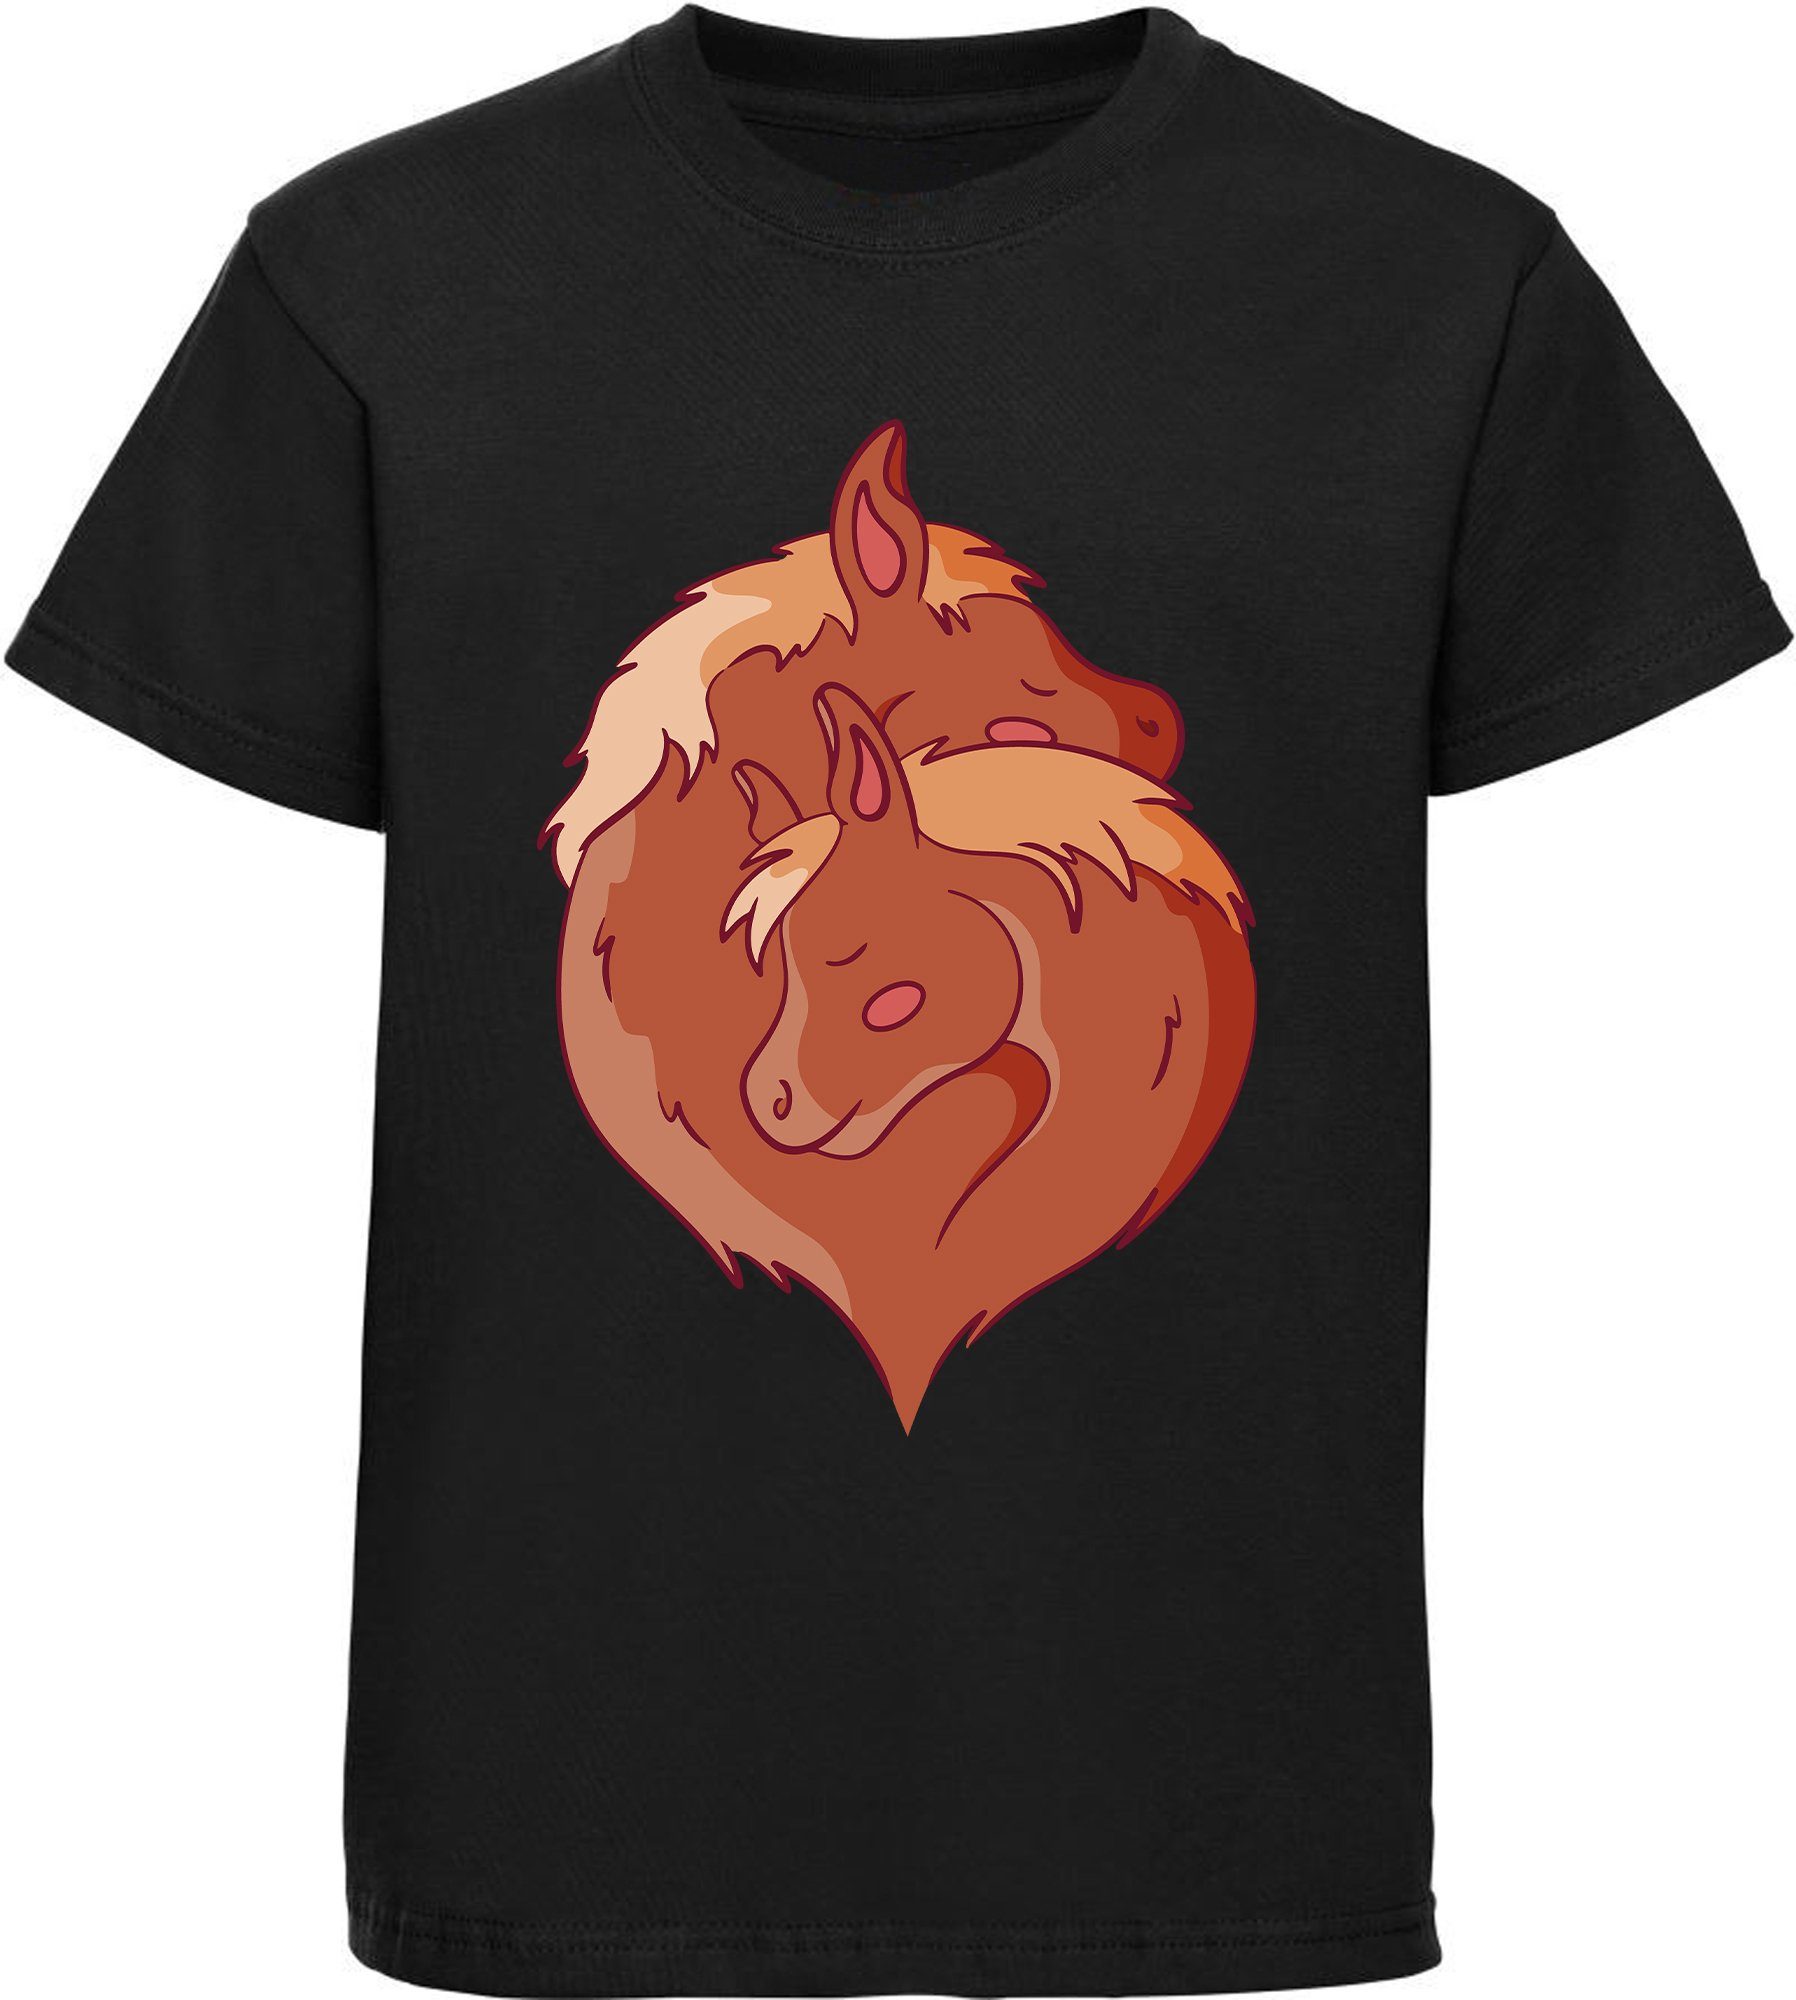 MyDesign24 Pferde Stil bedrucktes kuschelnde im schwarz i152 T-Shirt Mädchen Yang zwei mit Print-Shirt Yin Aufdruck, Baumwollshirt